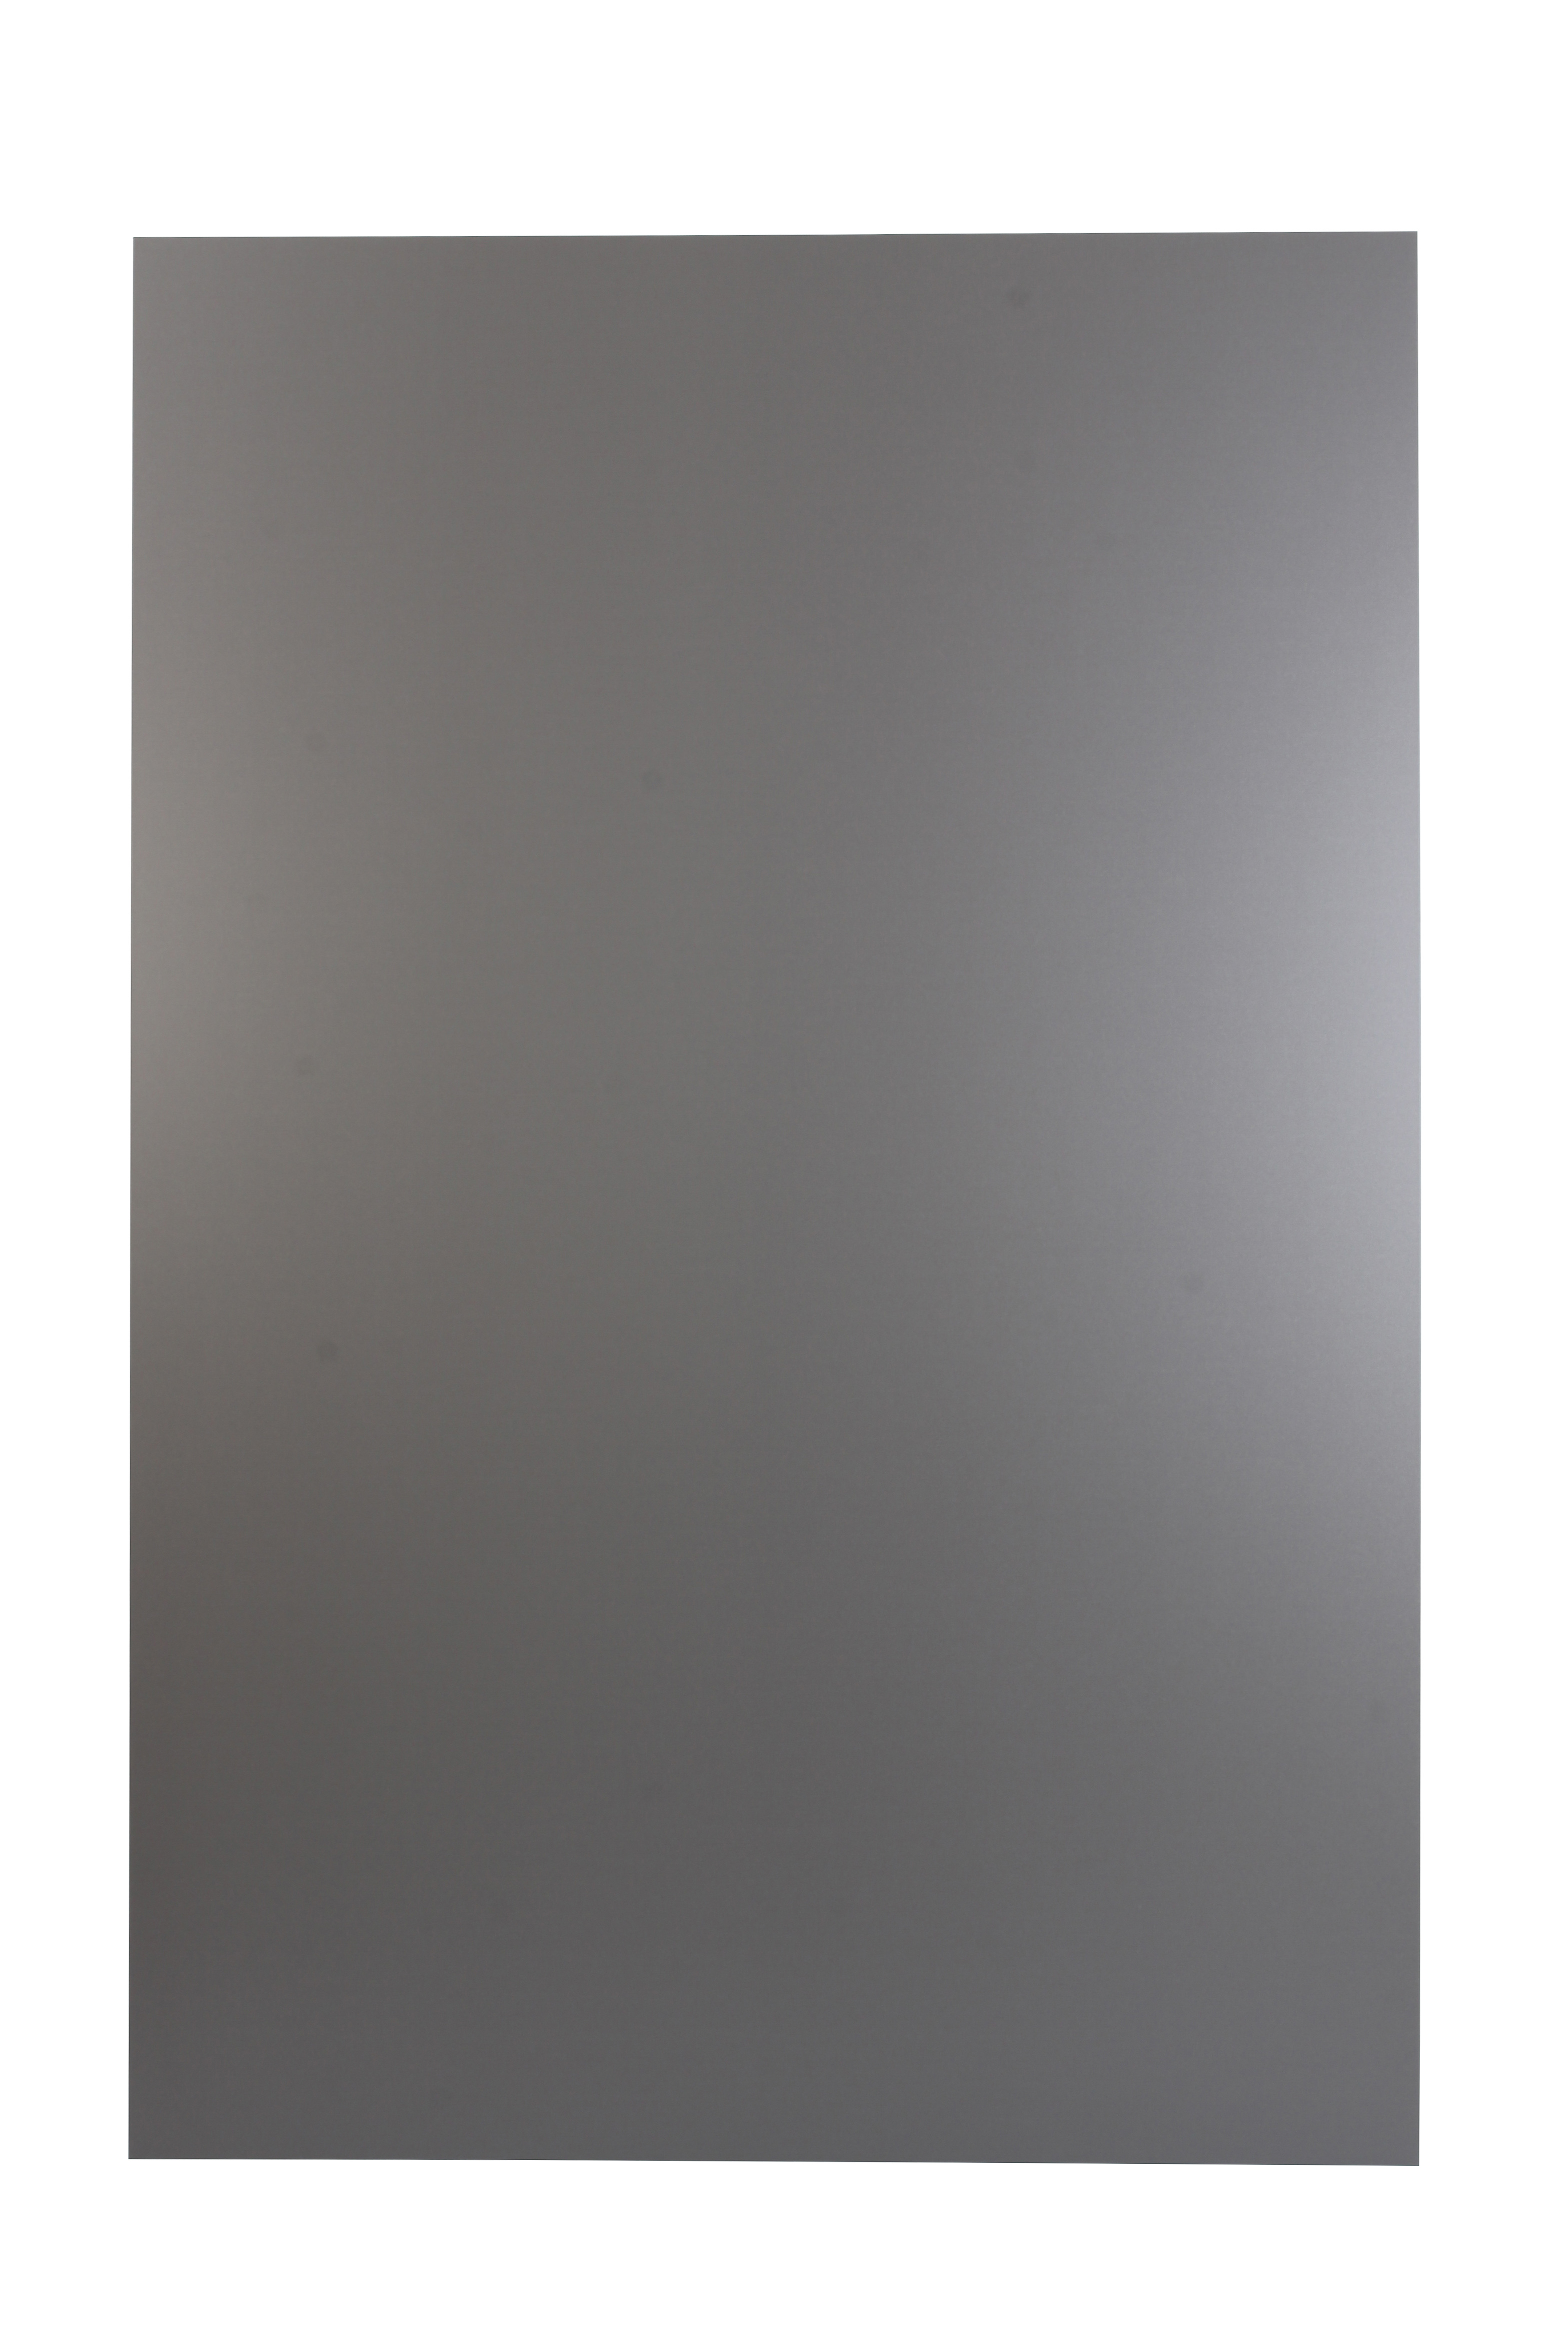 Plaque composite alu black silver nordlinger pro 80 x 120cm ép 3mm - NORDLINGER